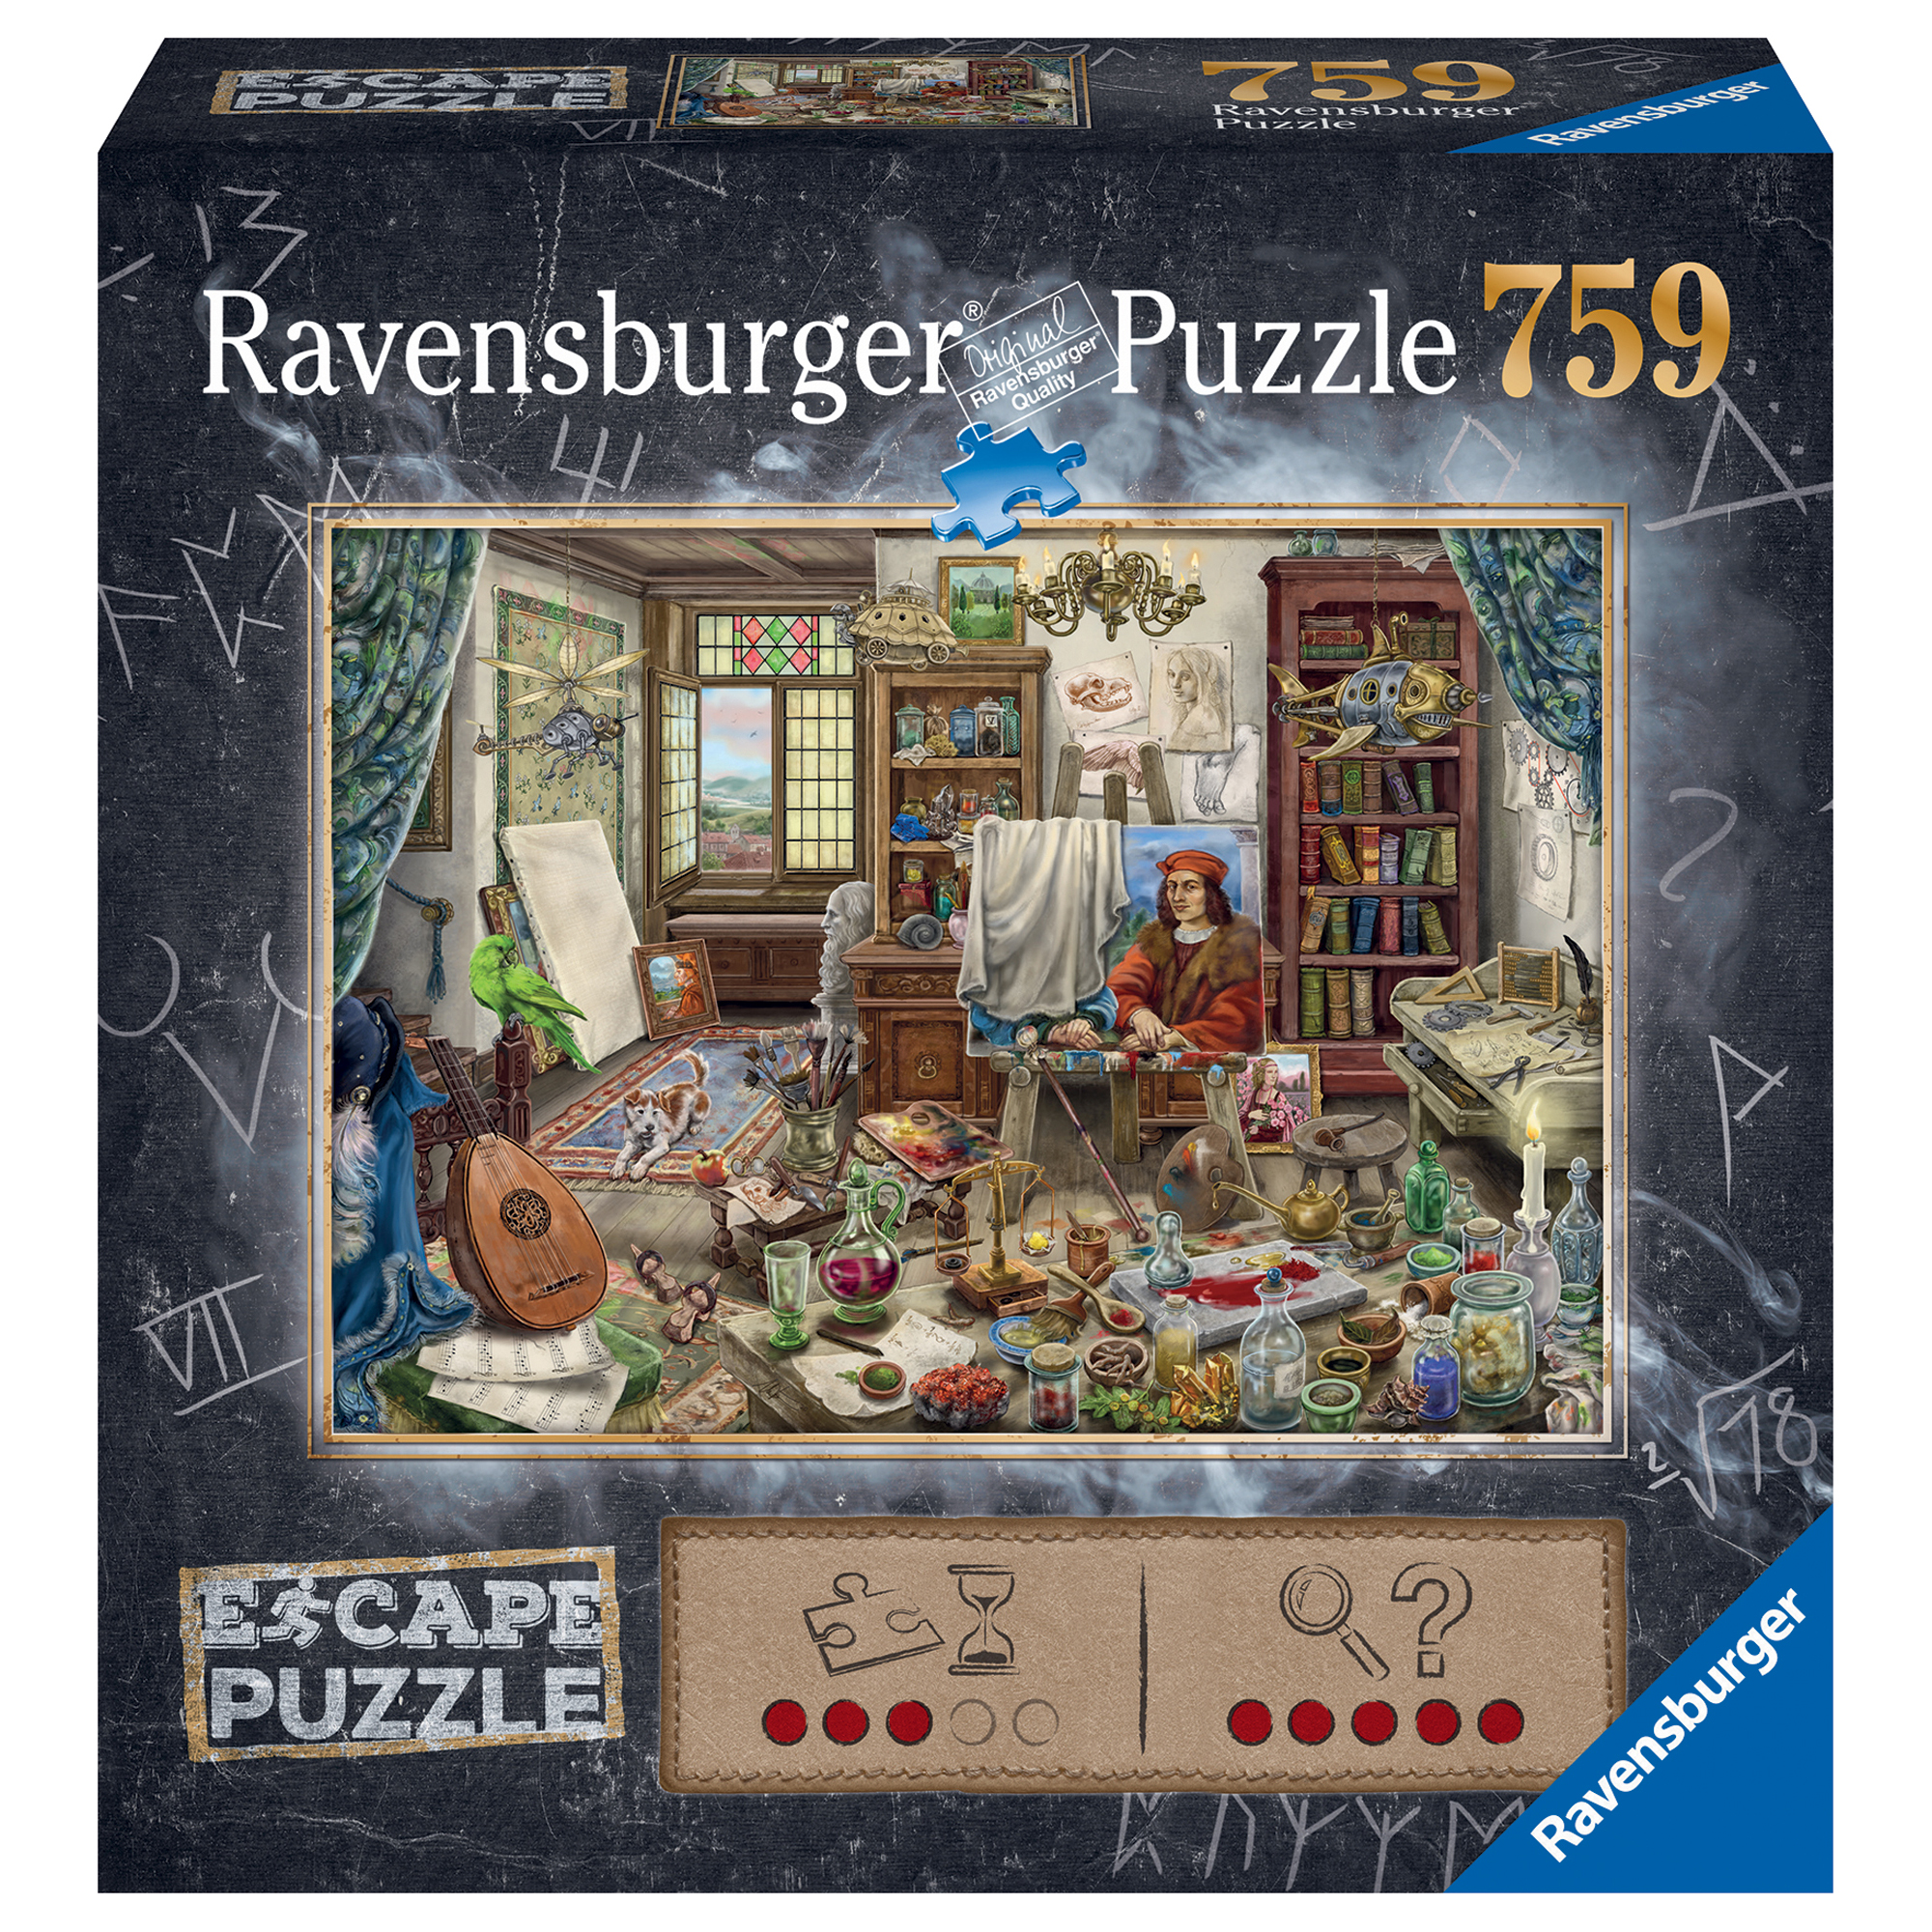 Ravensburger Escape l'atelier dell'artista puzzle, 759 pezzi - Ravensburger